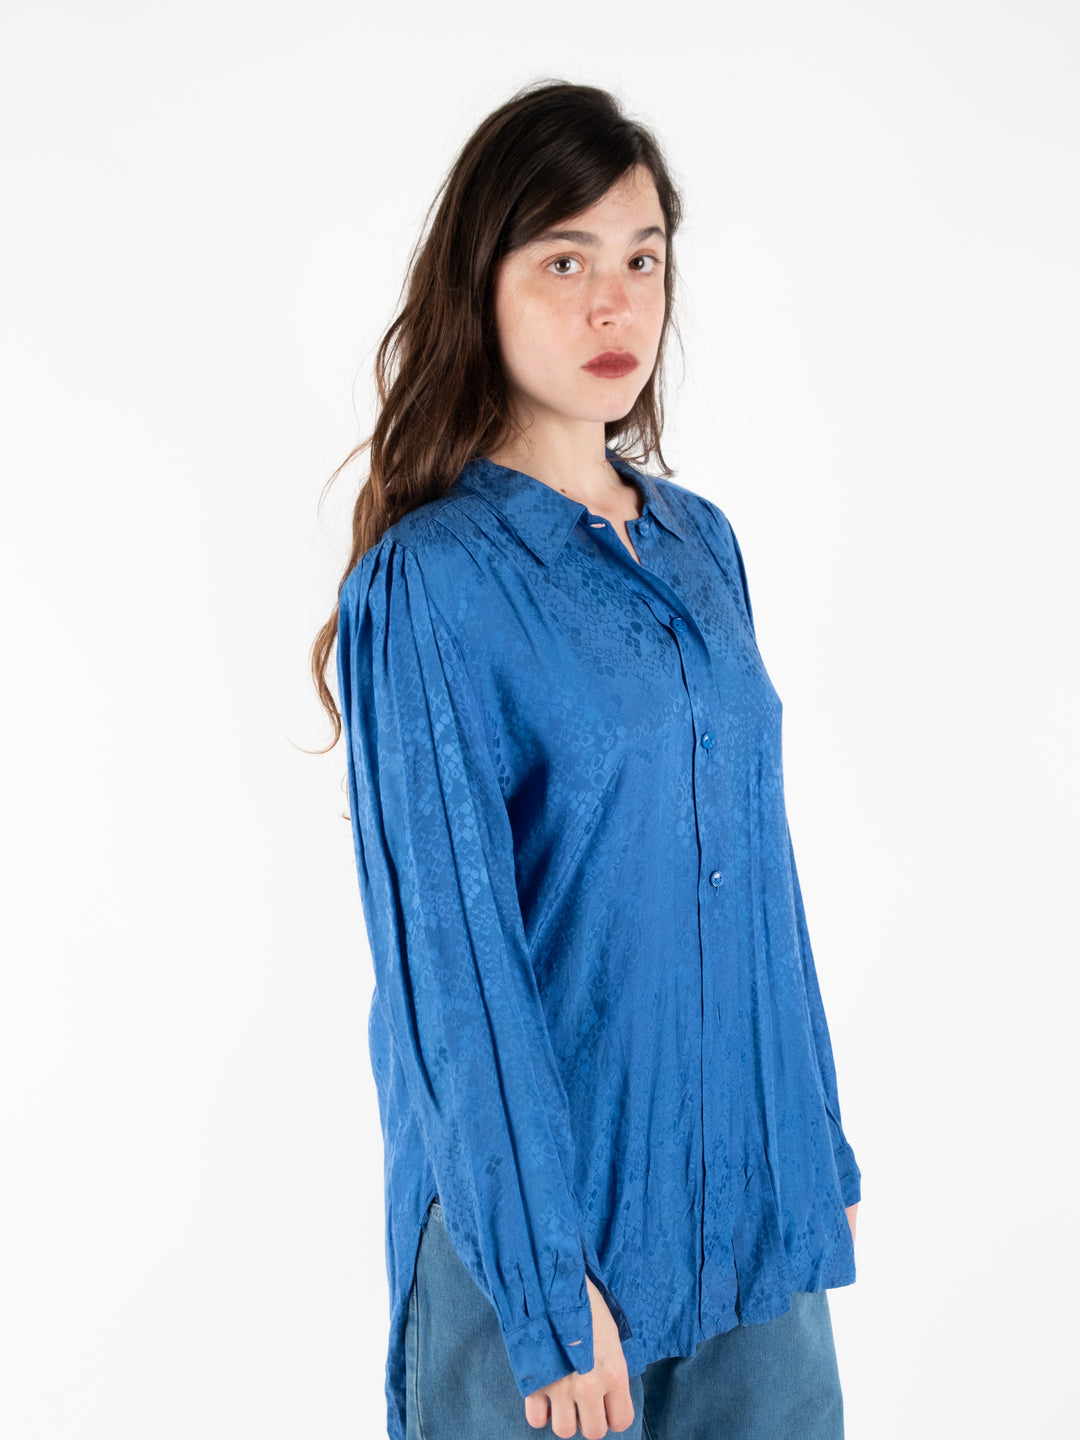 Blue Buttoned Shirt